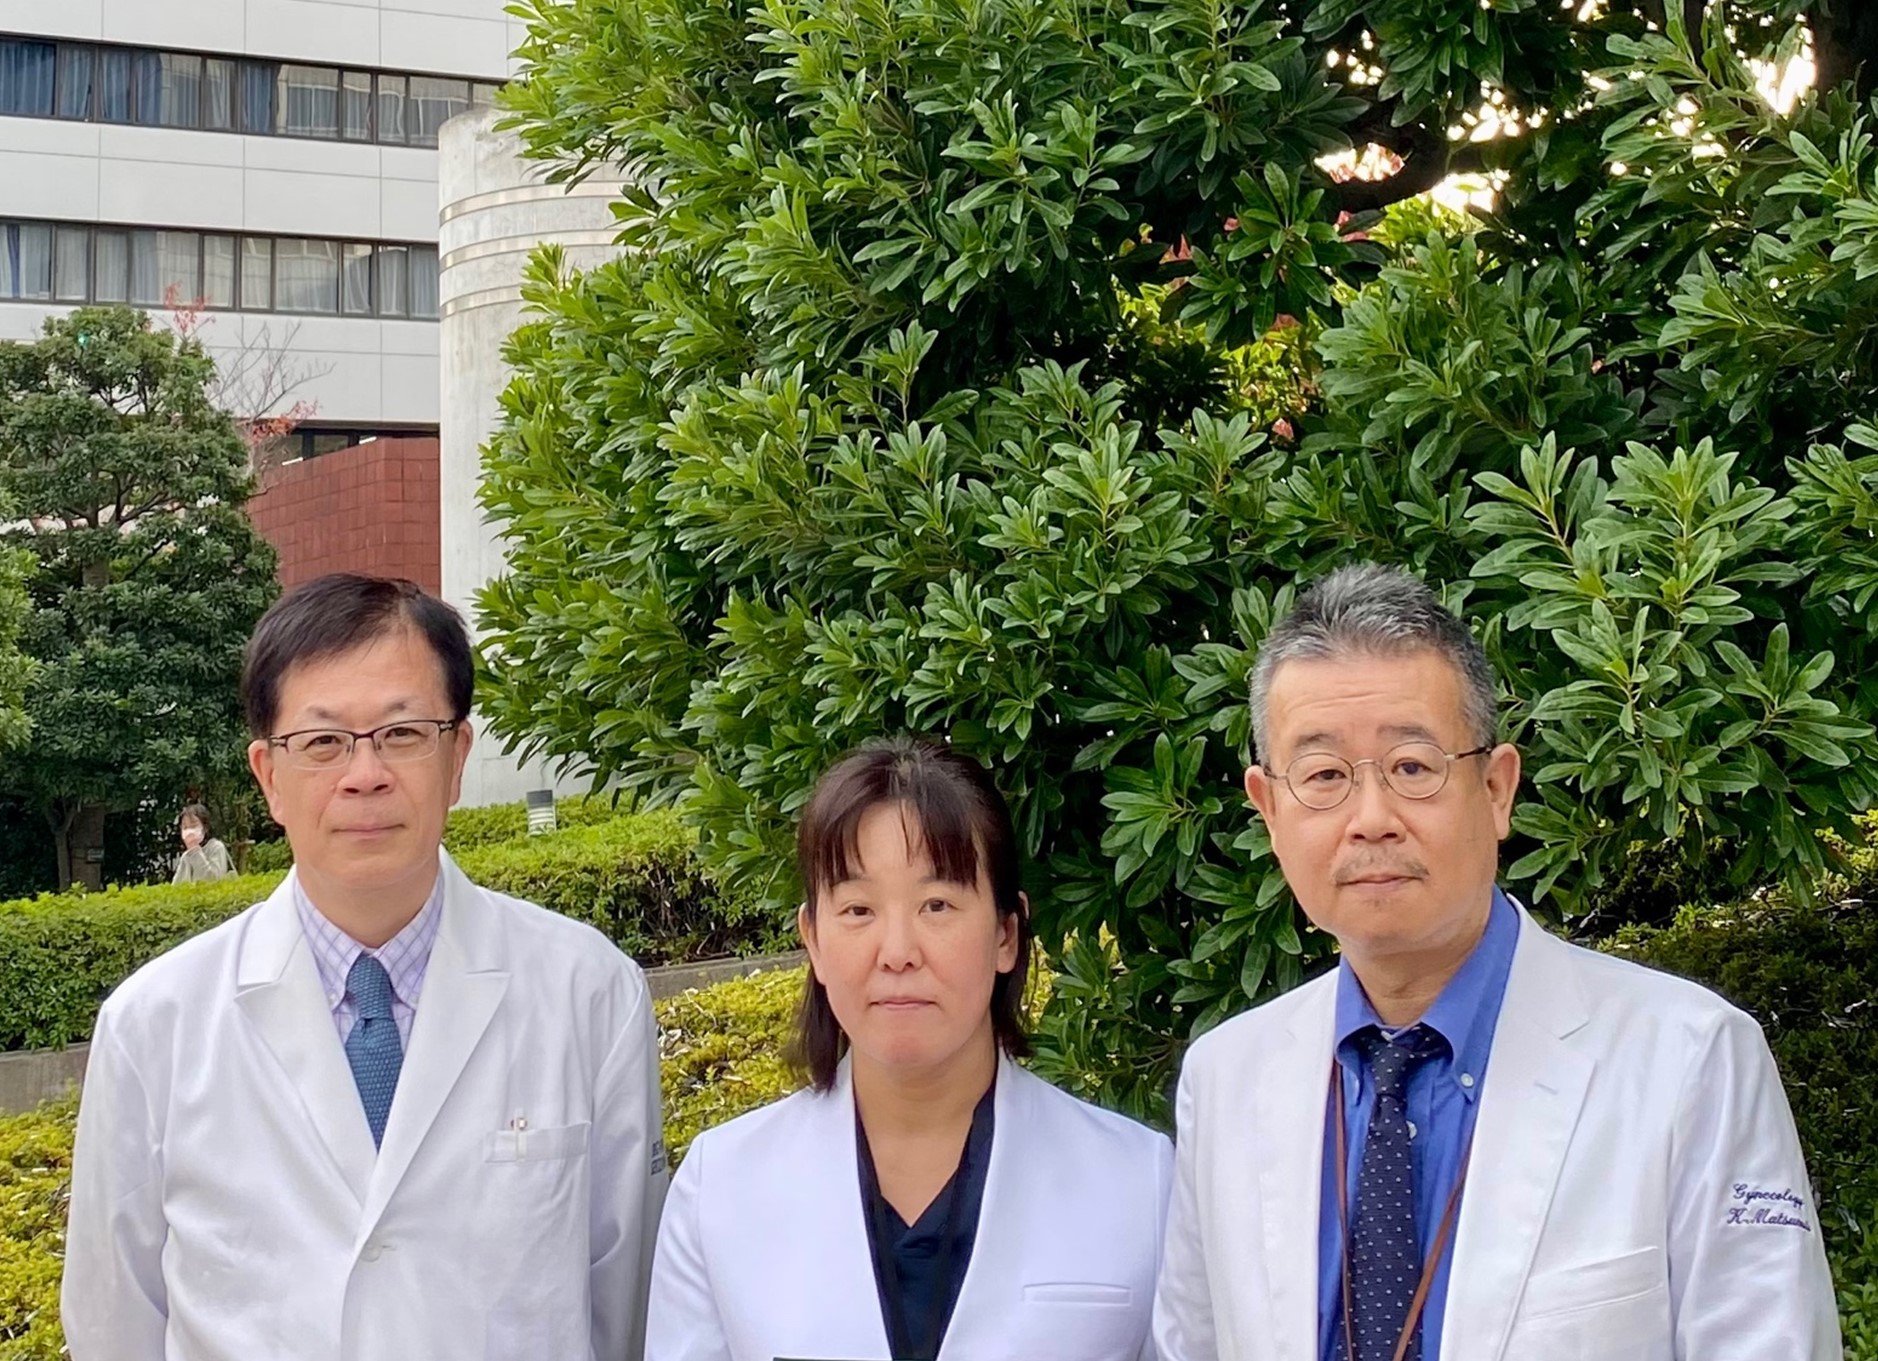 松岡隆准教授（理化学研究所と昭和大学の共同研究チーム）が説明可能AIを用いた超音波画像診断支援の新技術を開発、プレスリリースを配信しました。